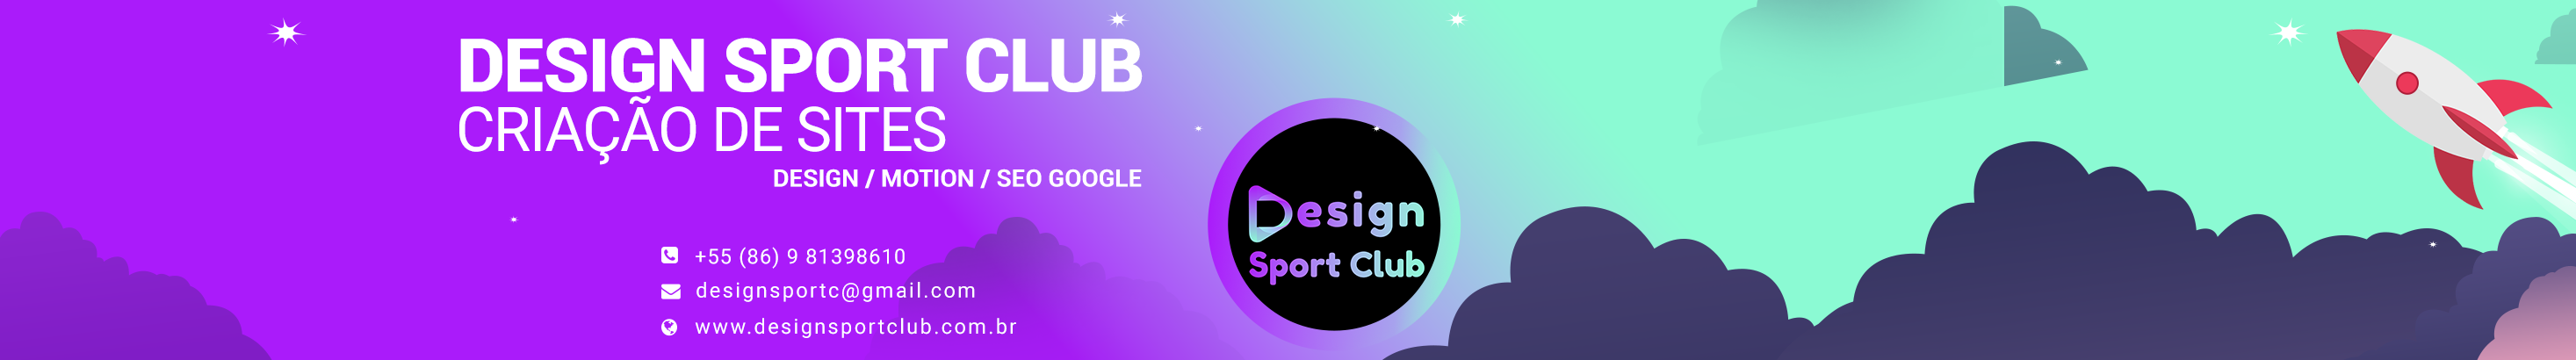 Design Sport Club's profile banner